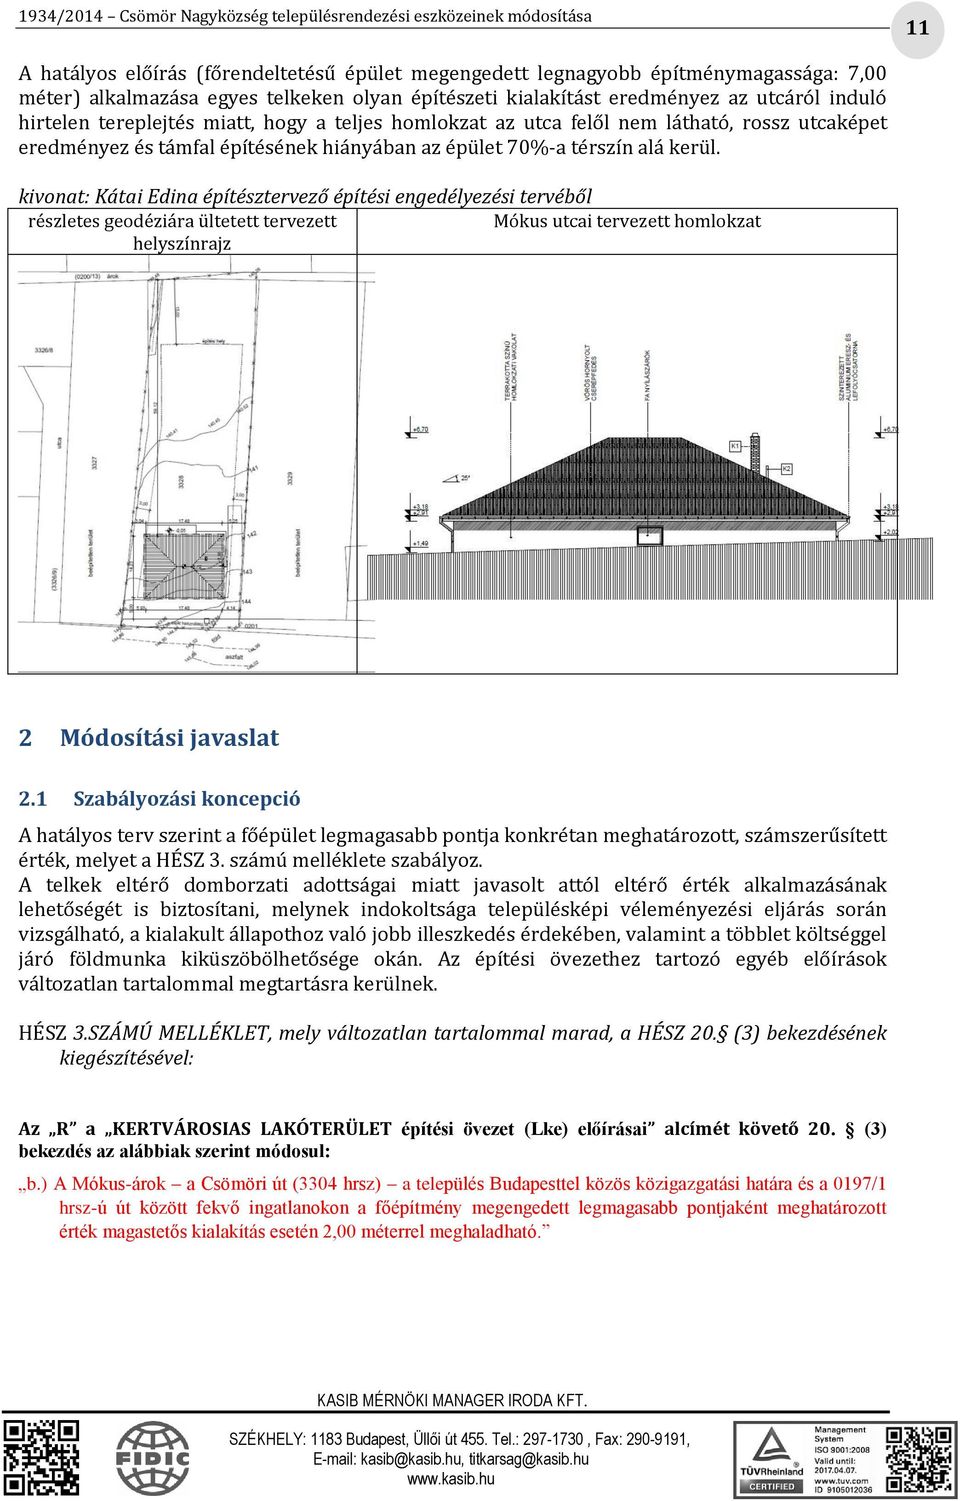 kivonat: Kátai Edina építésztervező építési engedélyezési tervéből részletes geodéziára ültetett tervezett Mókus utcai tervezett homlokzat helyszínrajz 2 Módosítási javaslat 2.